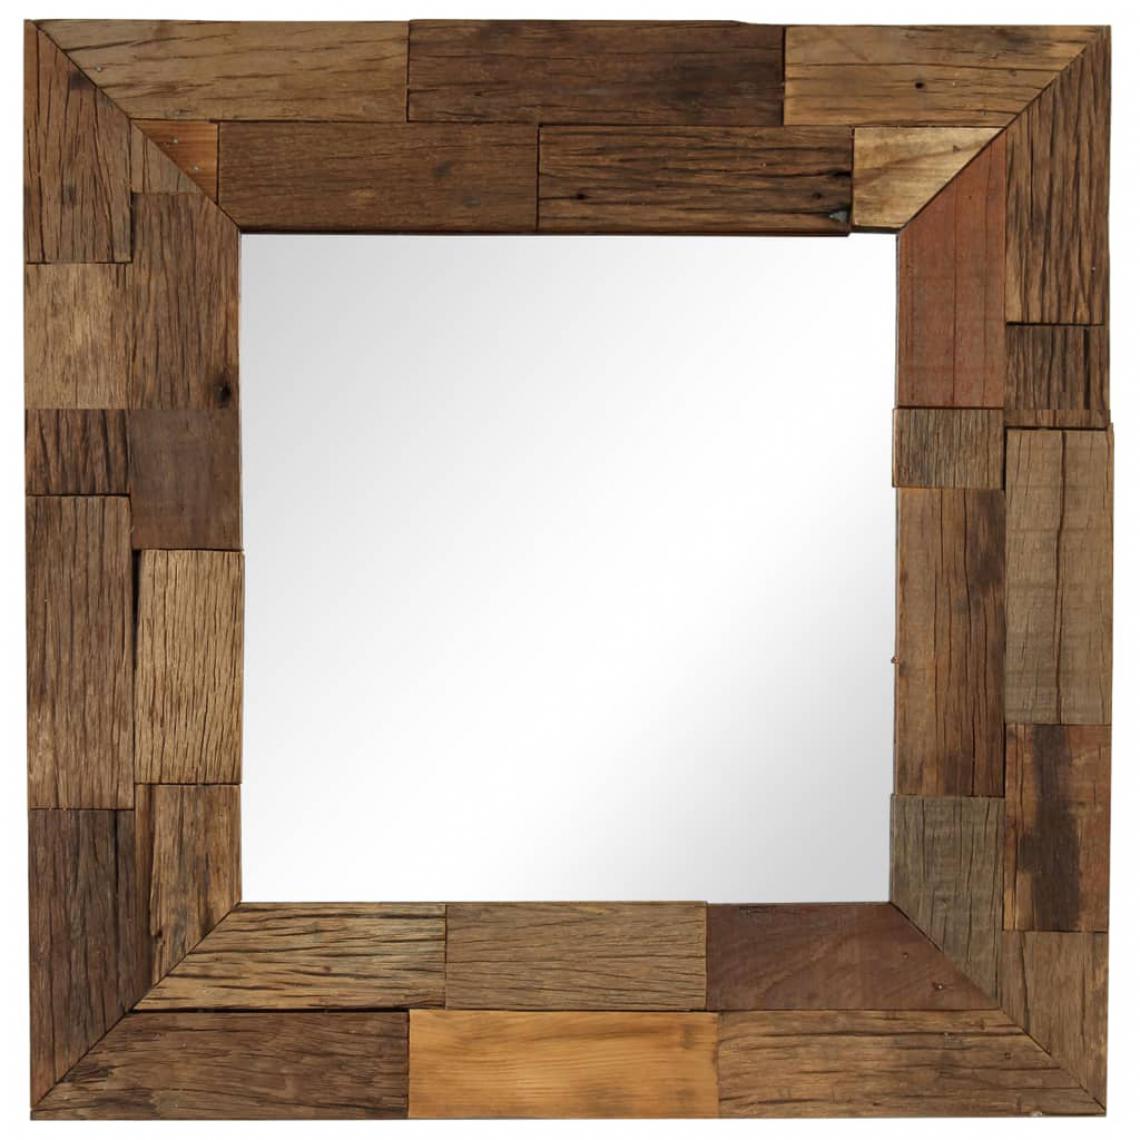 Decoshop26 - Miroir mural carré en bois de récupération massif 50 x 50 cm DEC022726 - Miroirs